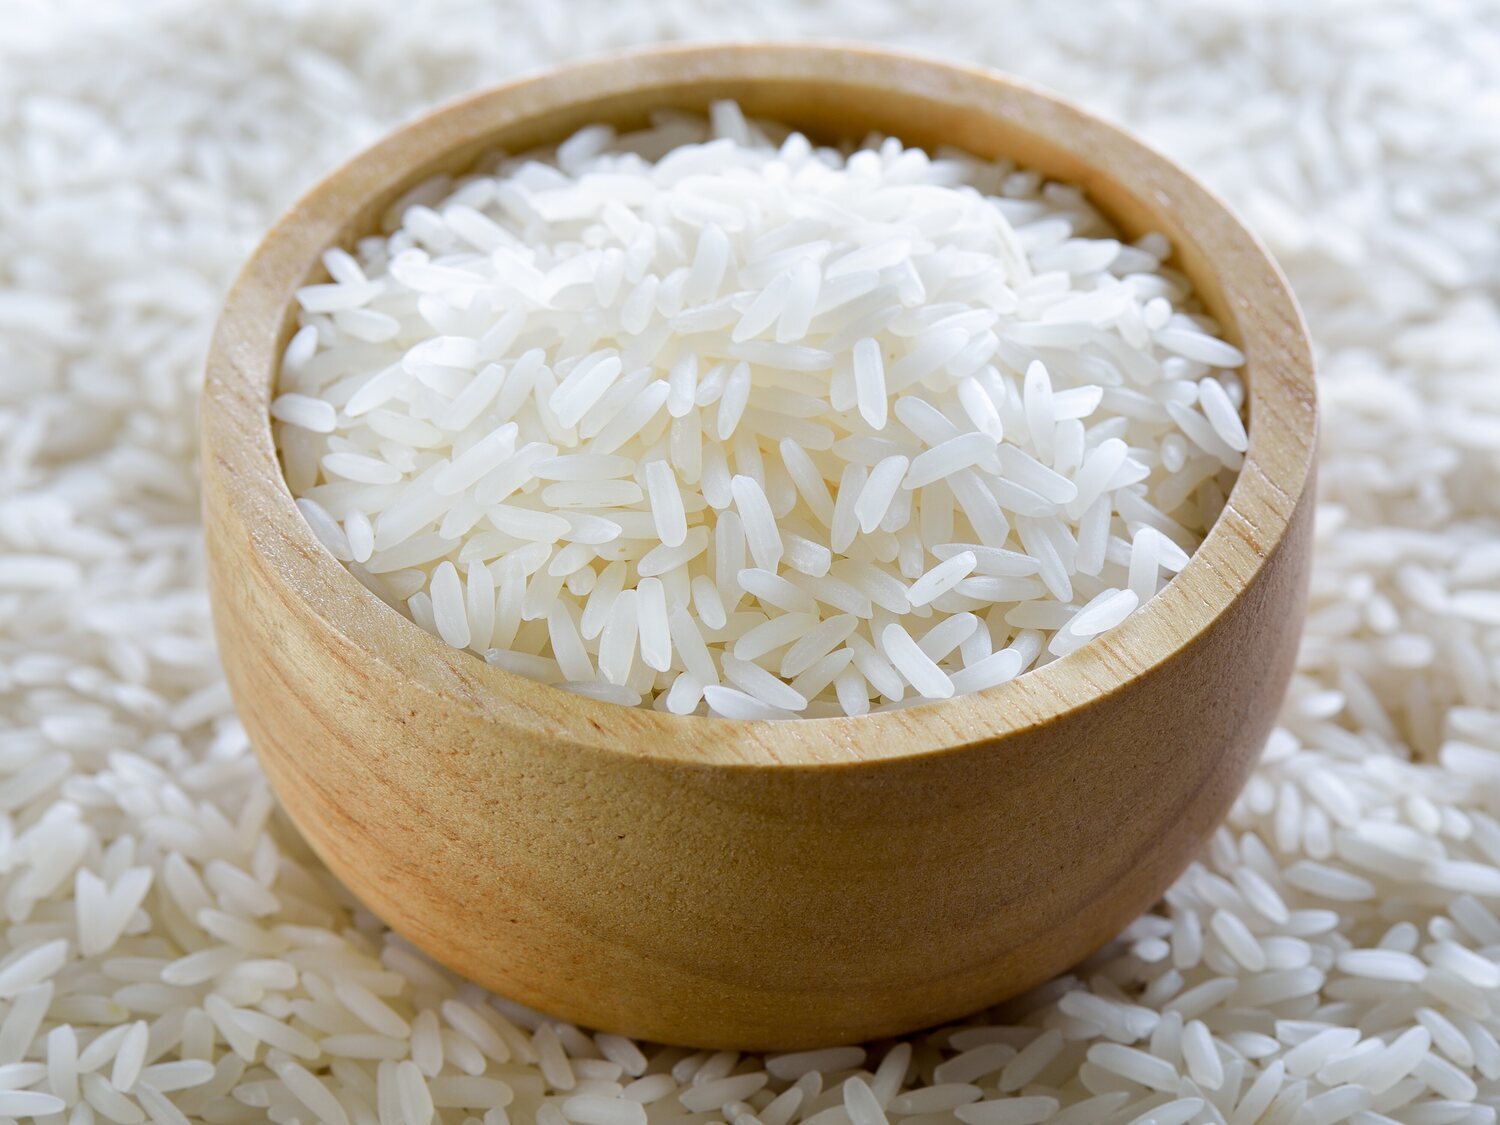 La OCU advierte de la presencia de arsénico en el arroz